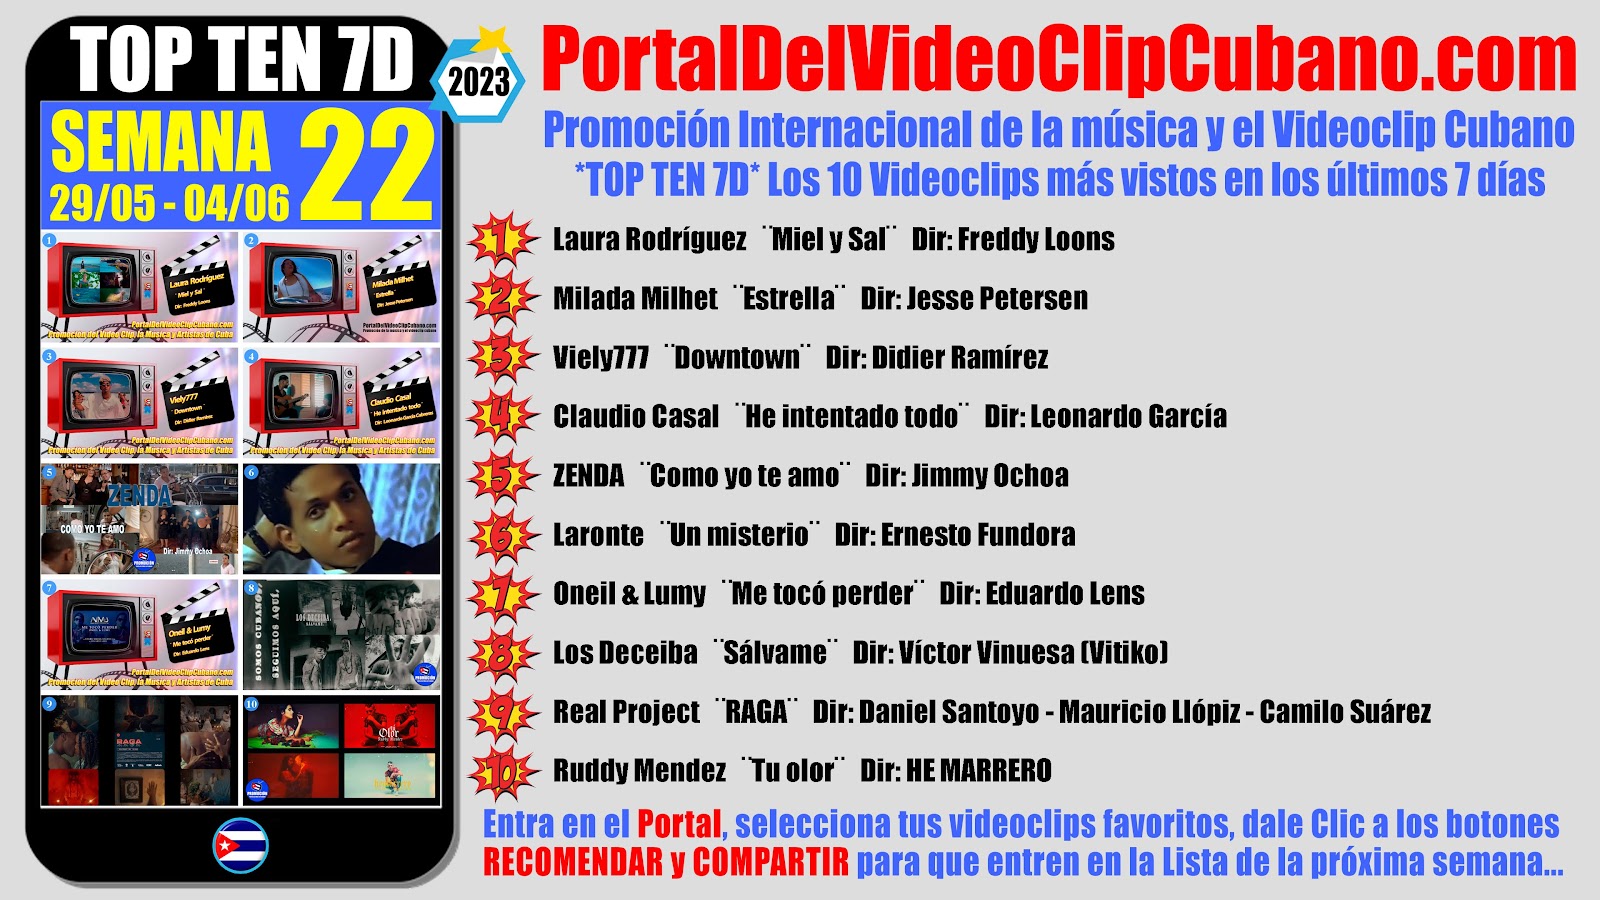 Artistas ganadores del * TOP TEN 7D * con los 10 Videoclips más vistos en la semana 22 (29/05 a 04/06 de 2023) en el Portal Del Vídeo Clip Cubano